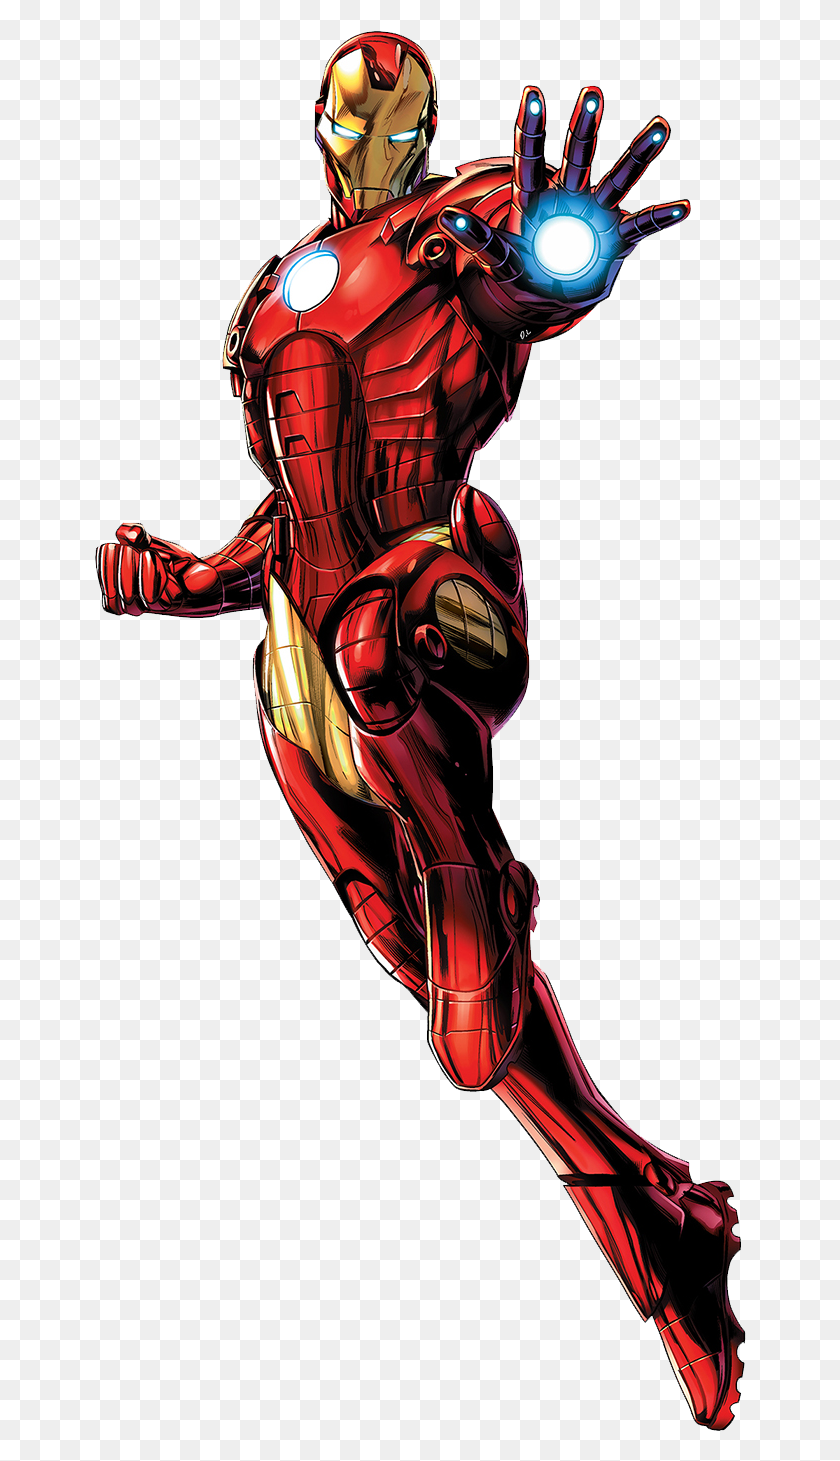 652x1401 Железный Человек Комиксы Marvel Мстители Железный Человек, Костюм, Шлем, Одежда Hd Png Скачать